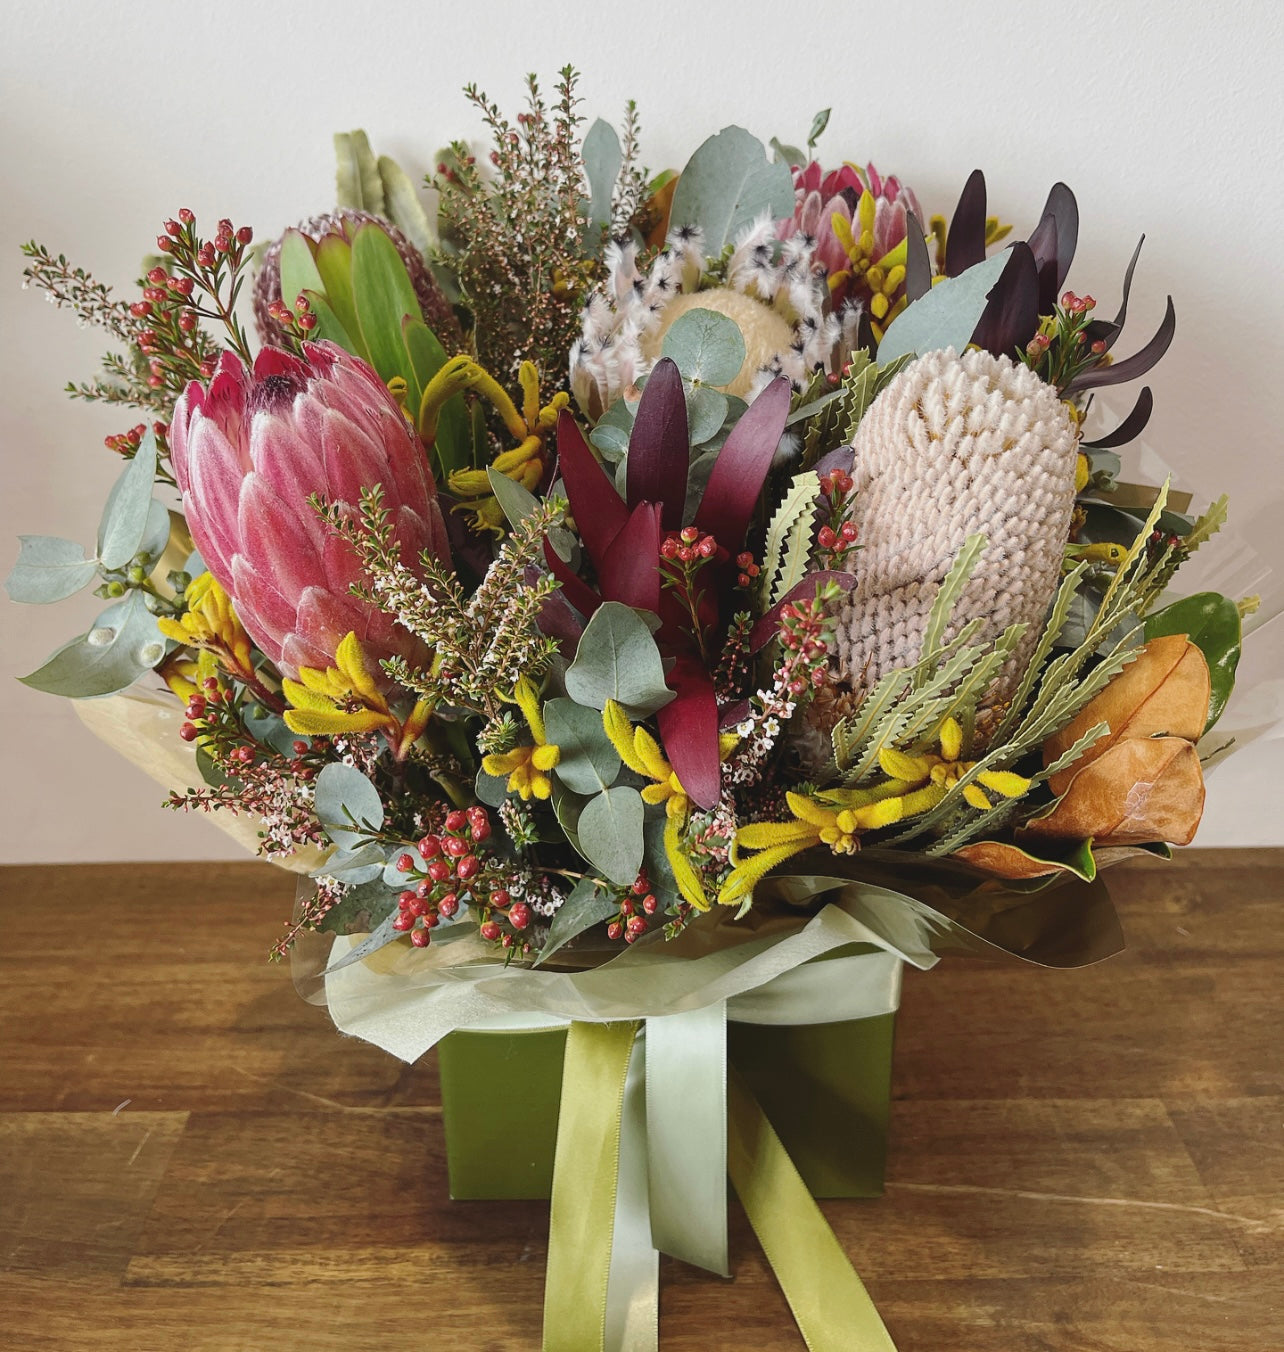 Native floral boxed arrangement